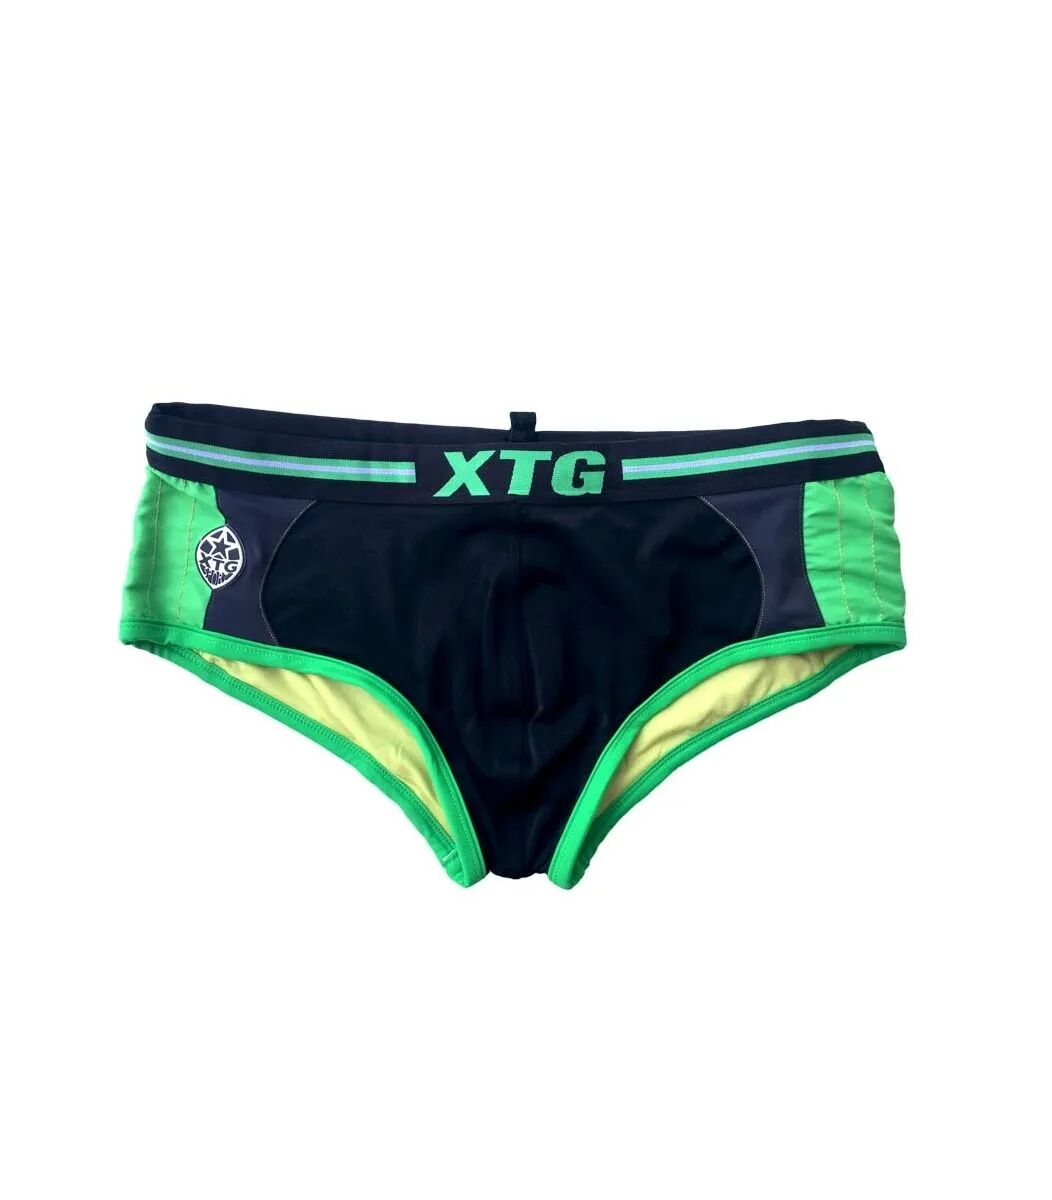 Swimwear Ανδρικό XTG μαγιο, σλιπ XL